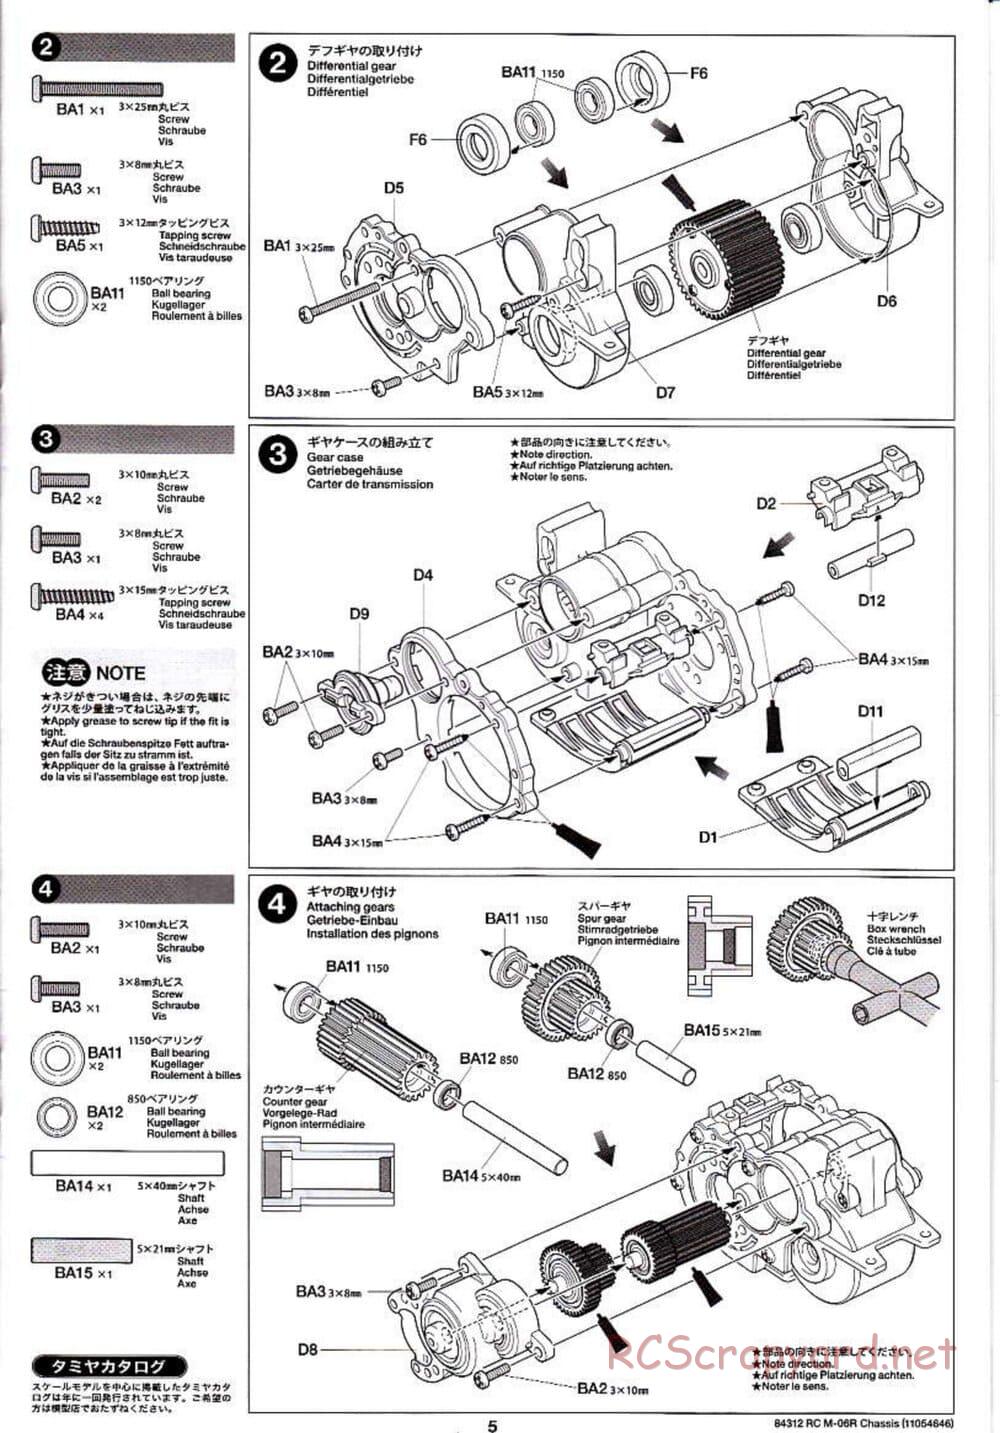 Tamiya - M-06R Chassis - Manual - Page 5